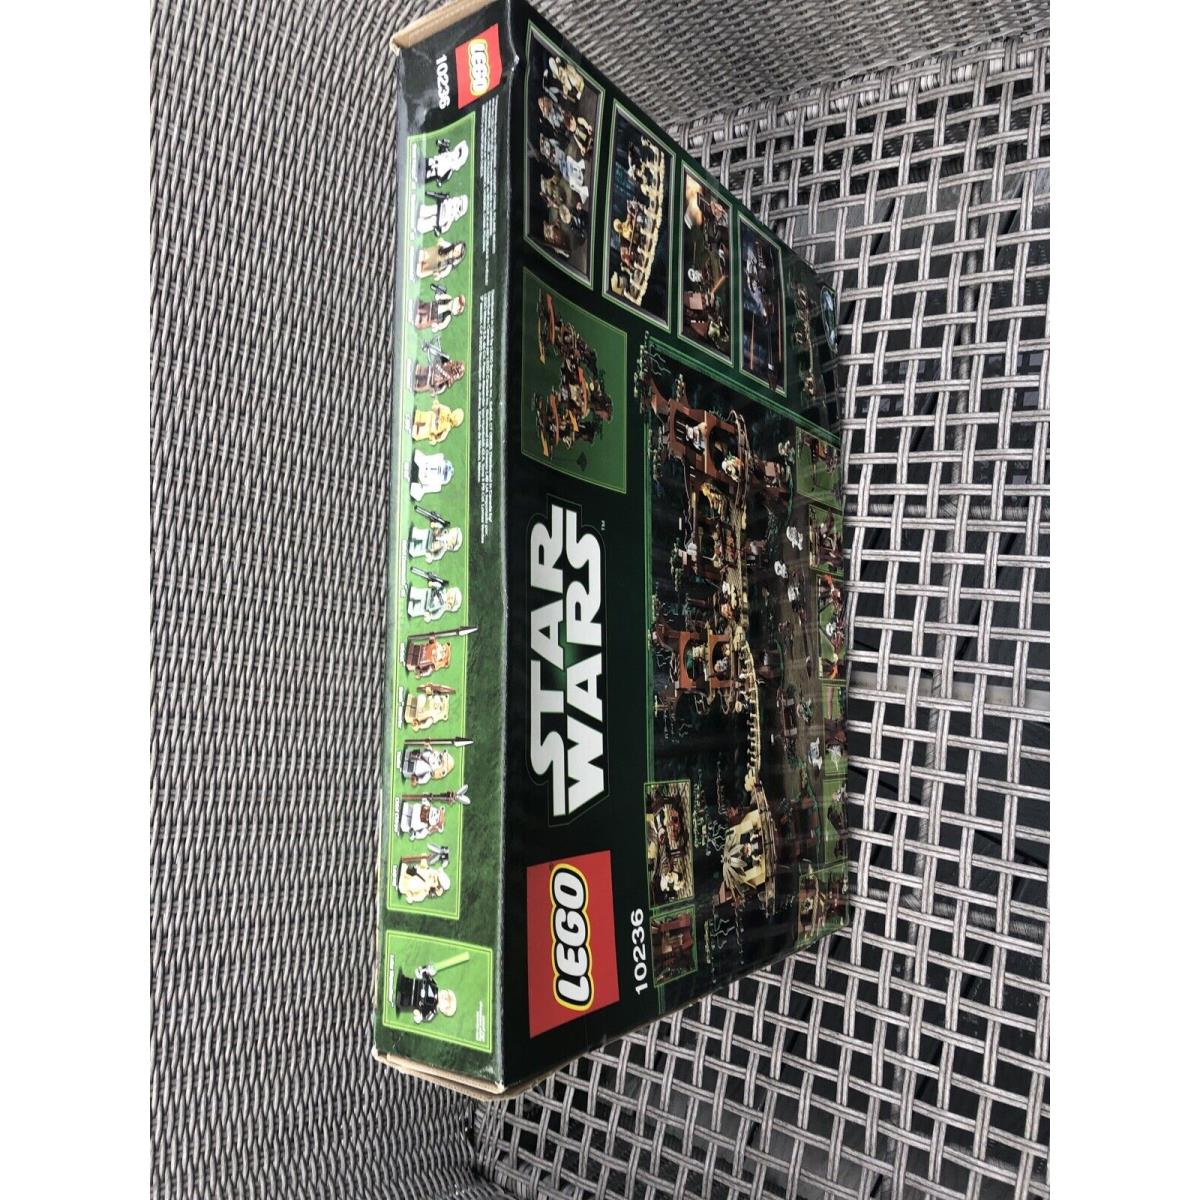 Lego Star Wars Ewok Village 10236 Outer Wear Box